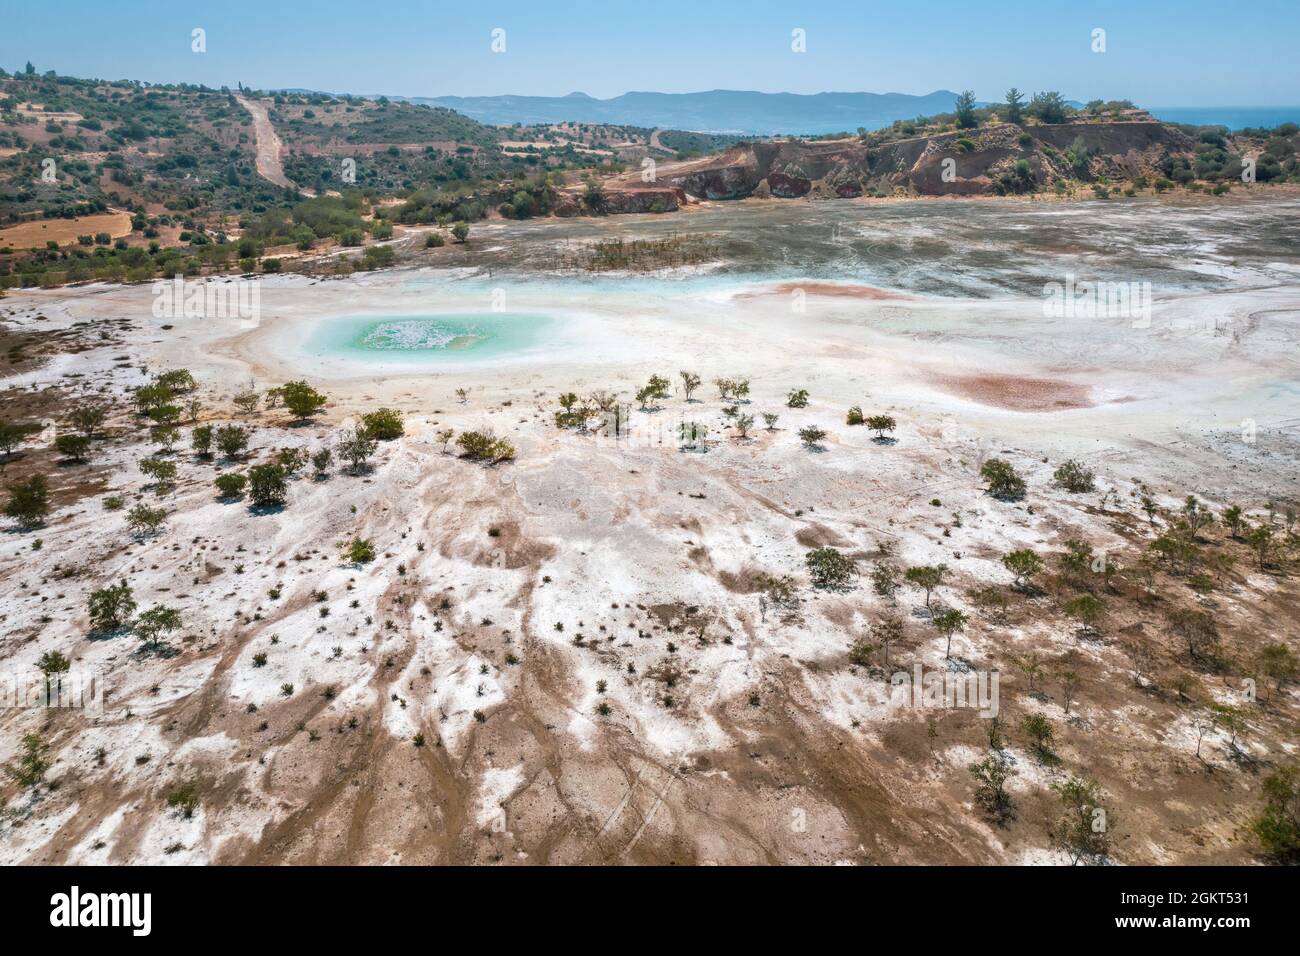 Kontaminierte Oberfläche der verlassenen Kupfermine in Limni, Zypern. Seltsame Farben und Formen stammen aus einem hohen Gehalt an giftigen Chemikalien Stockfoto